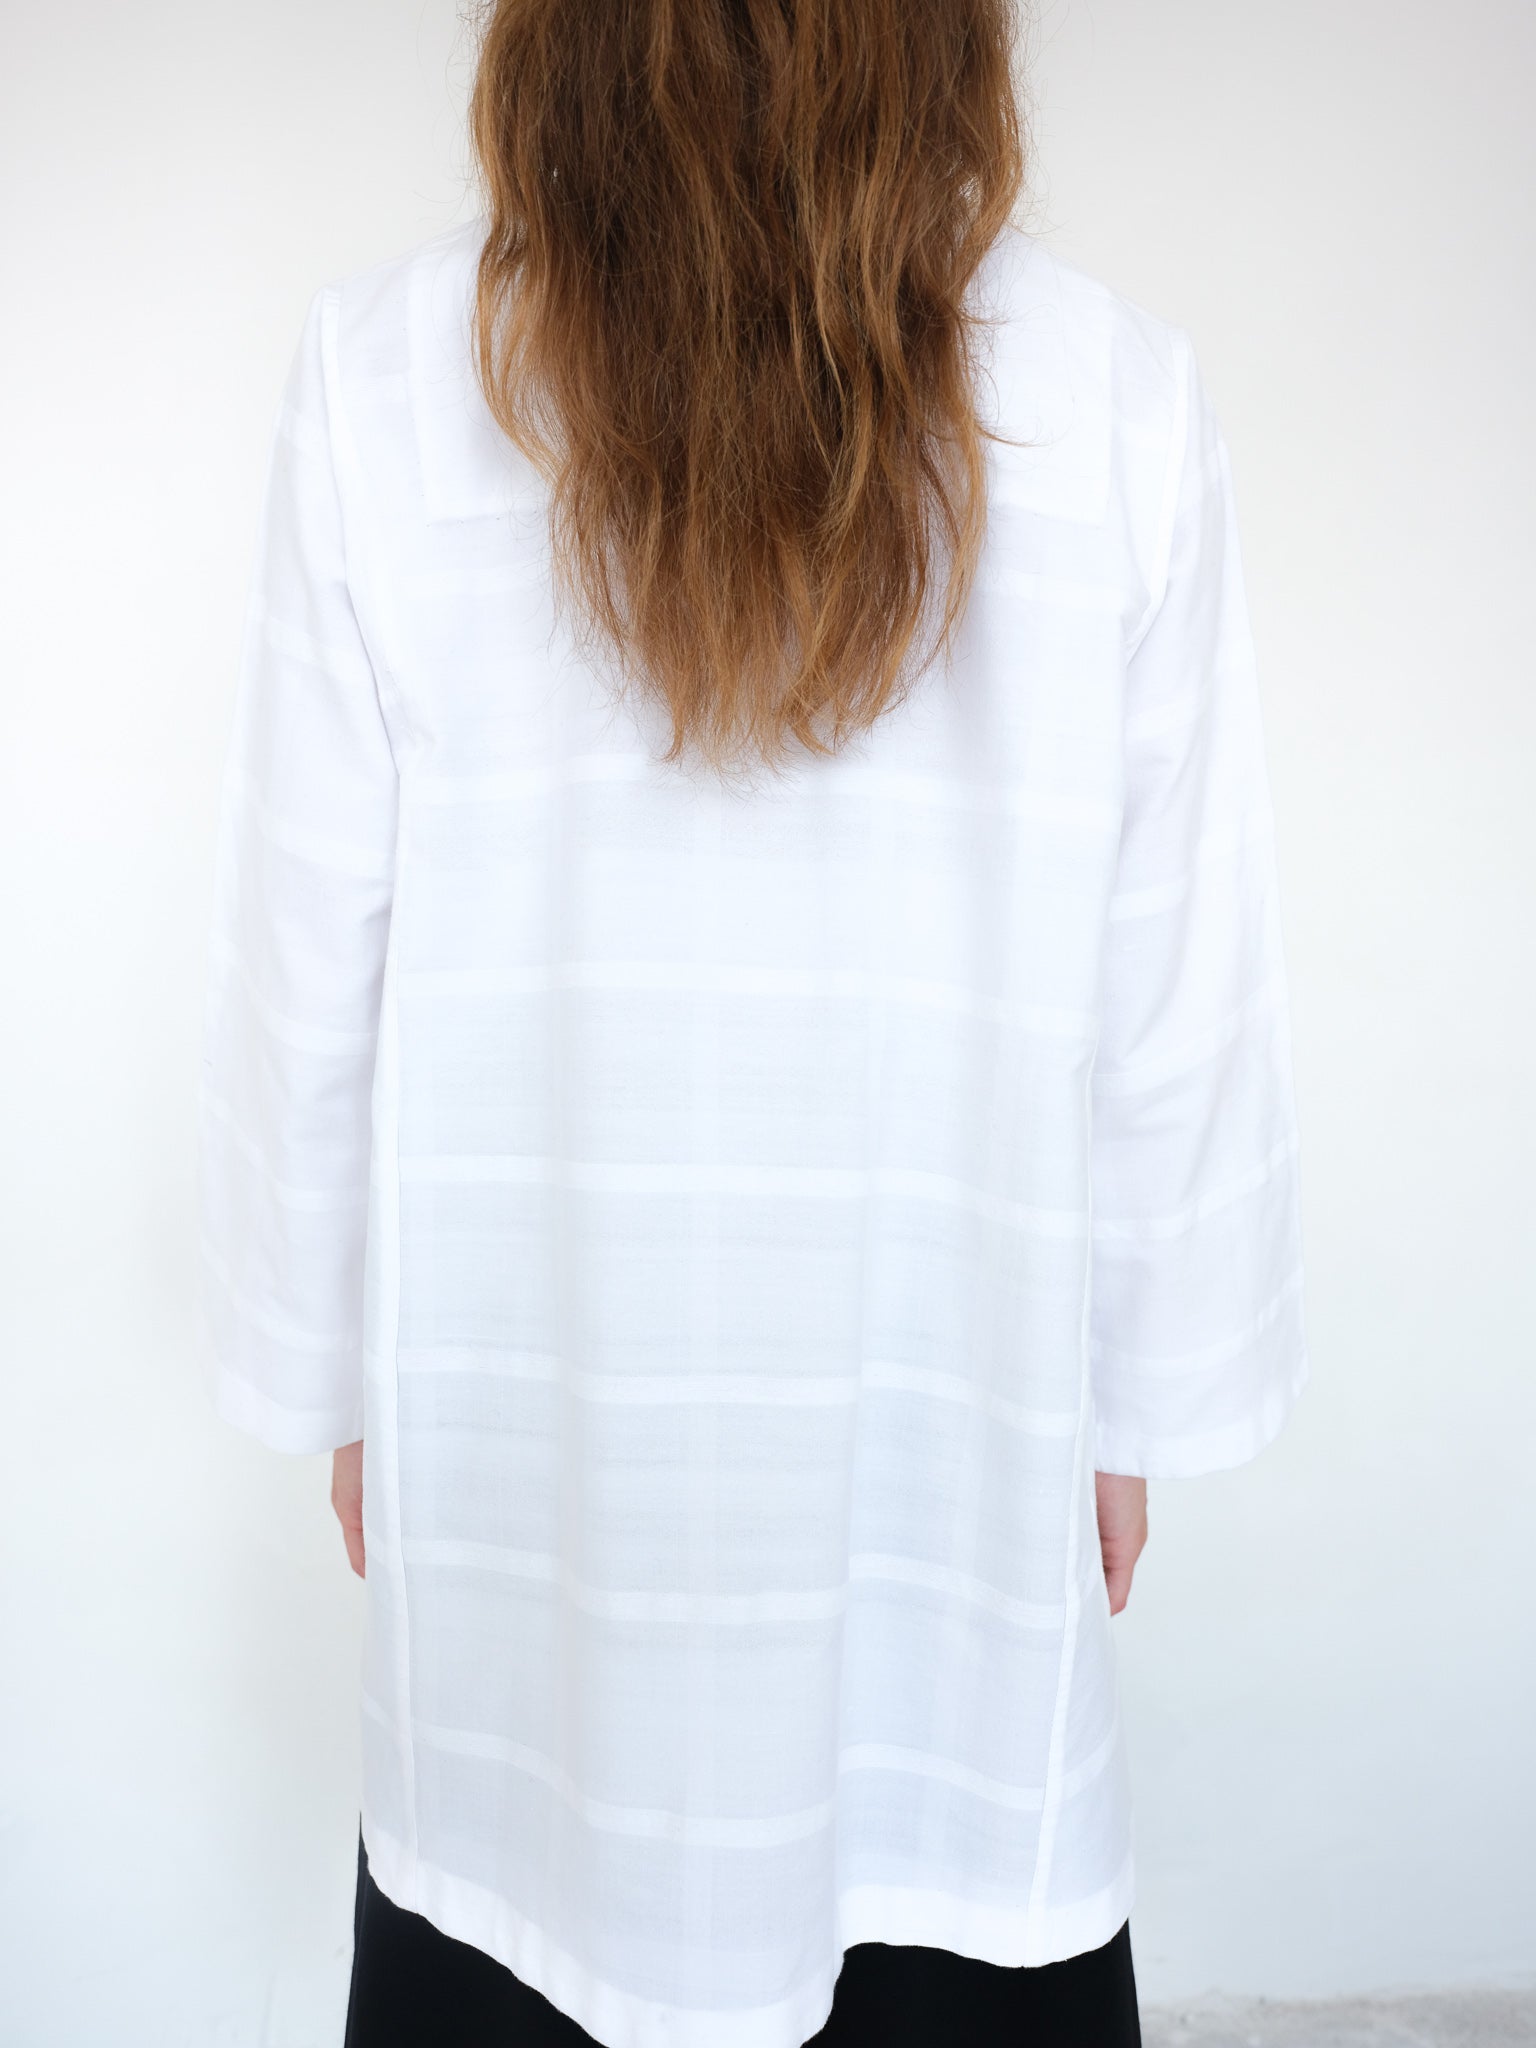 Handwoven cotton blouse